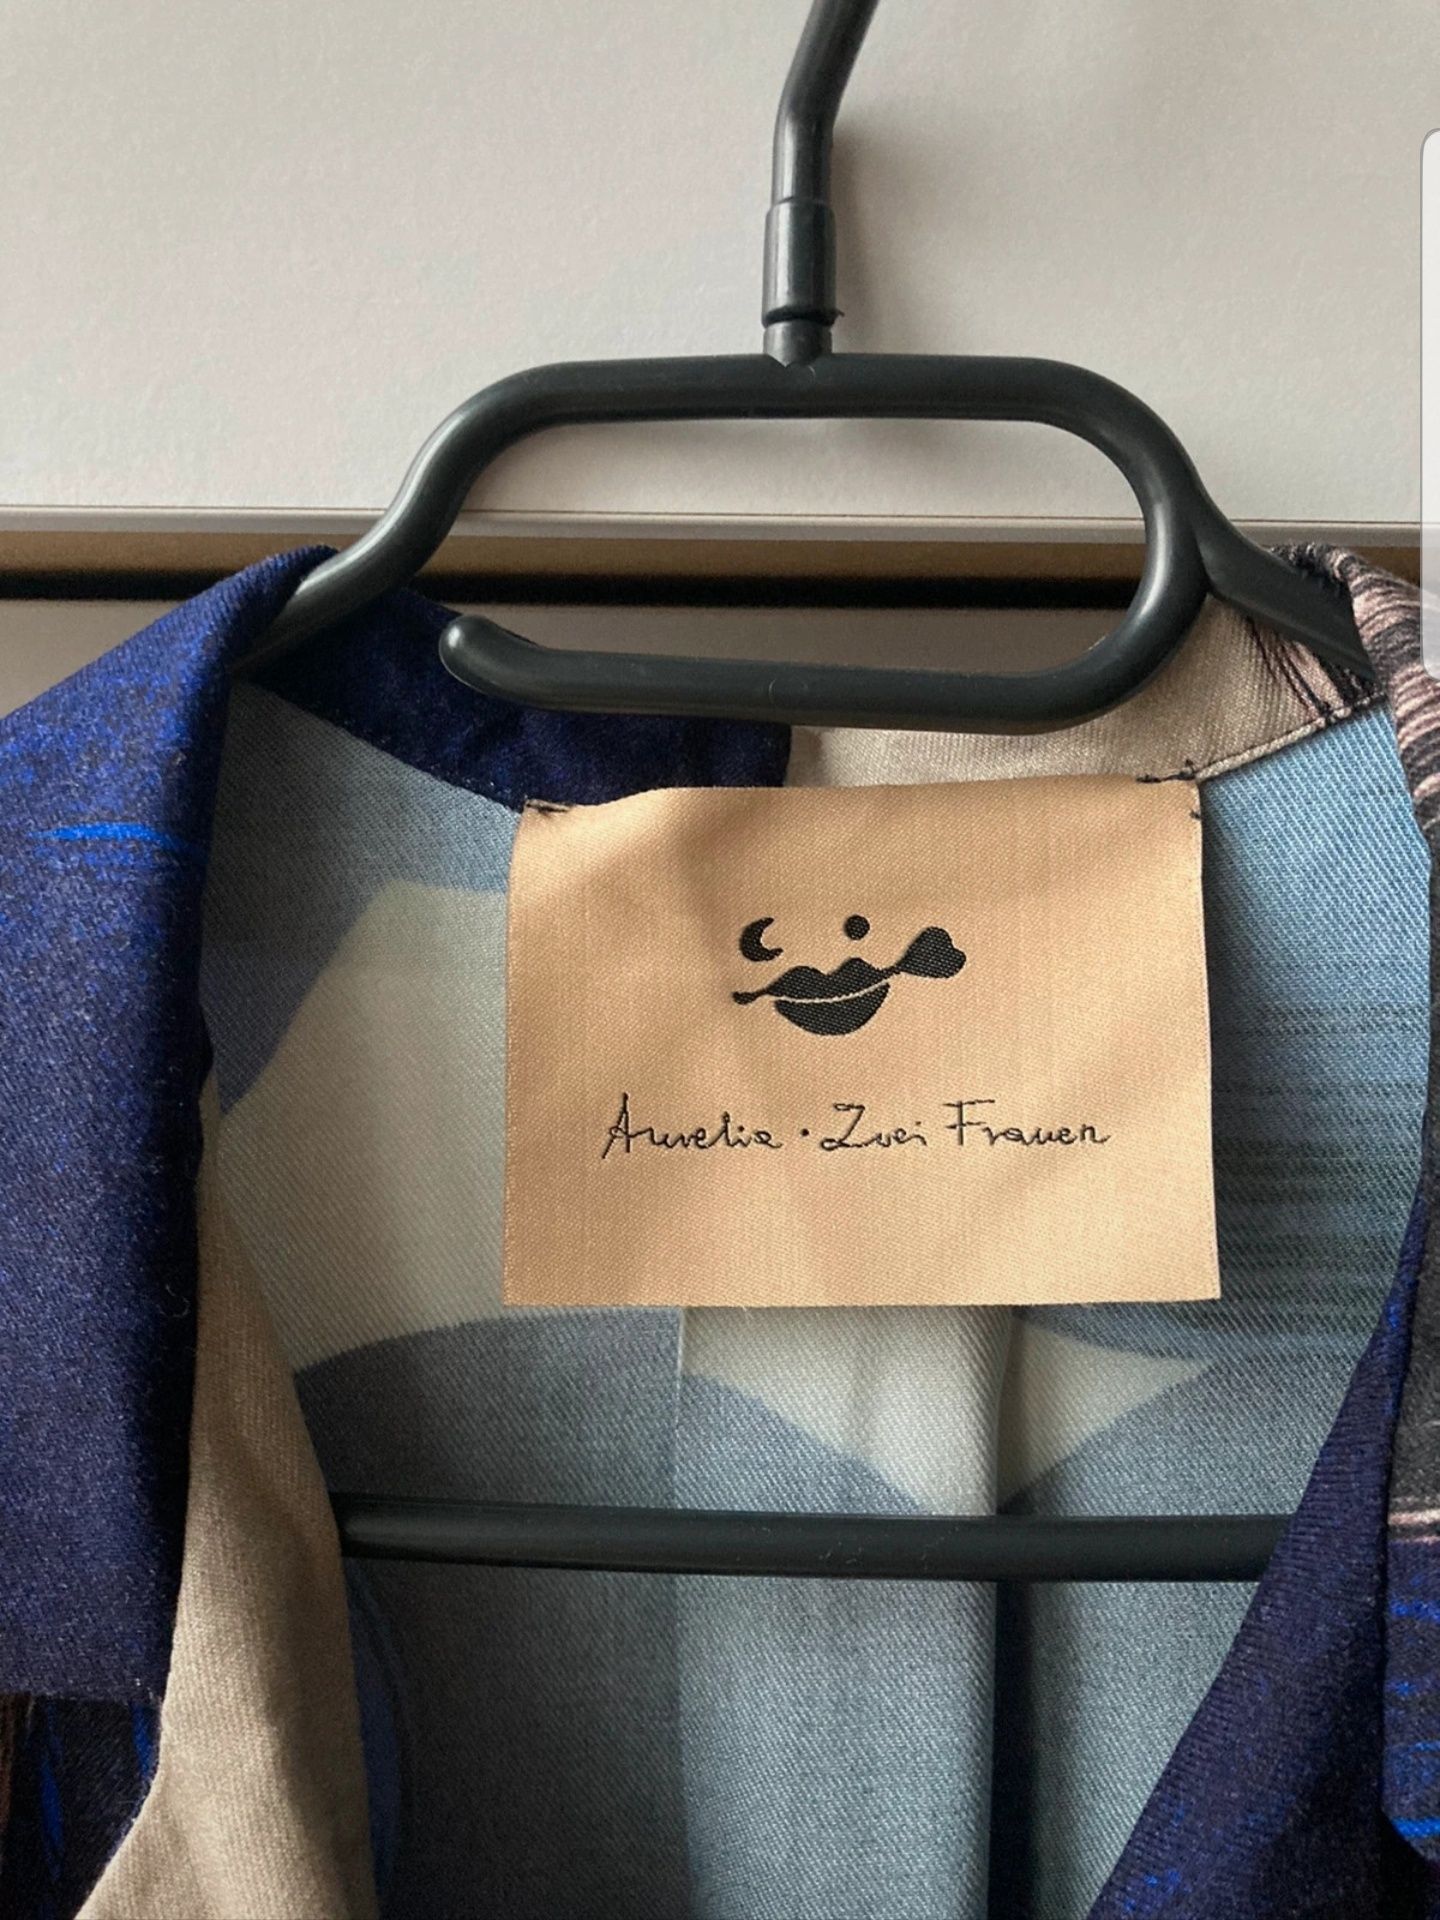 Koszula Aurelia und zwei frauen bluzka nadruk kimono Anna Rudak